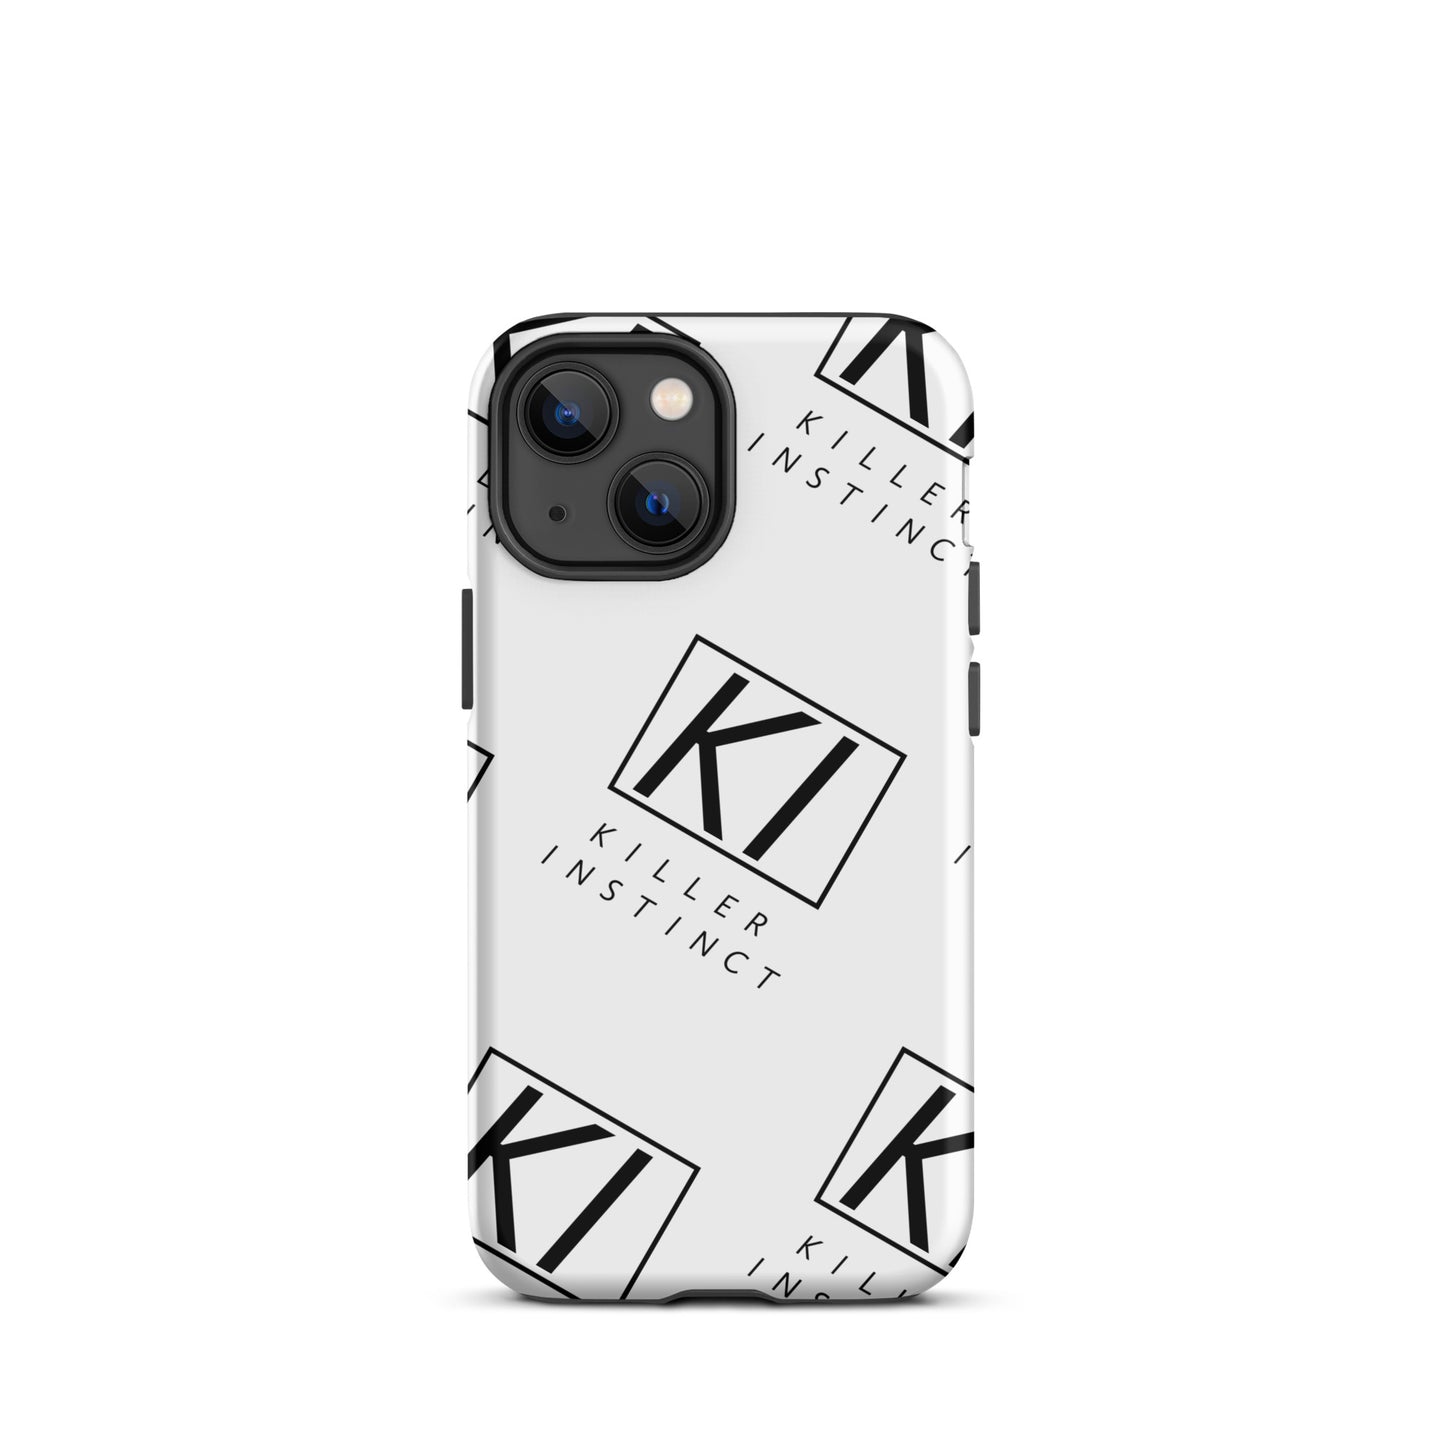 Killer Protection Phone Case - Killer Instinct LLC